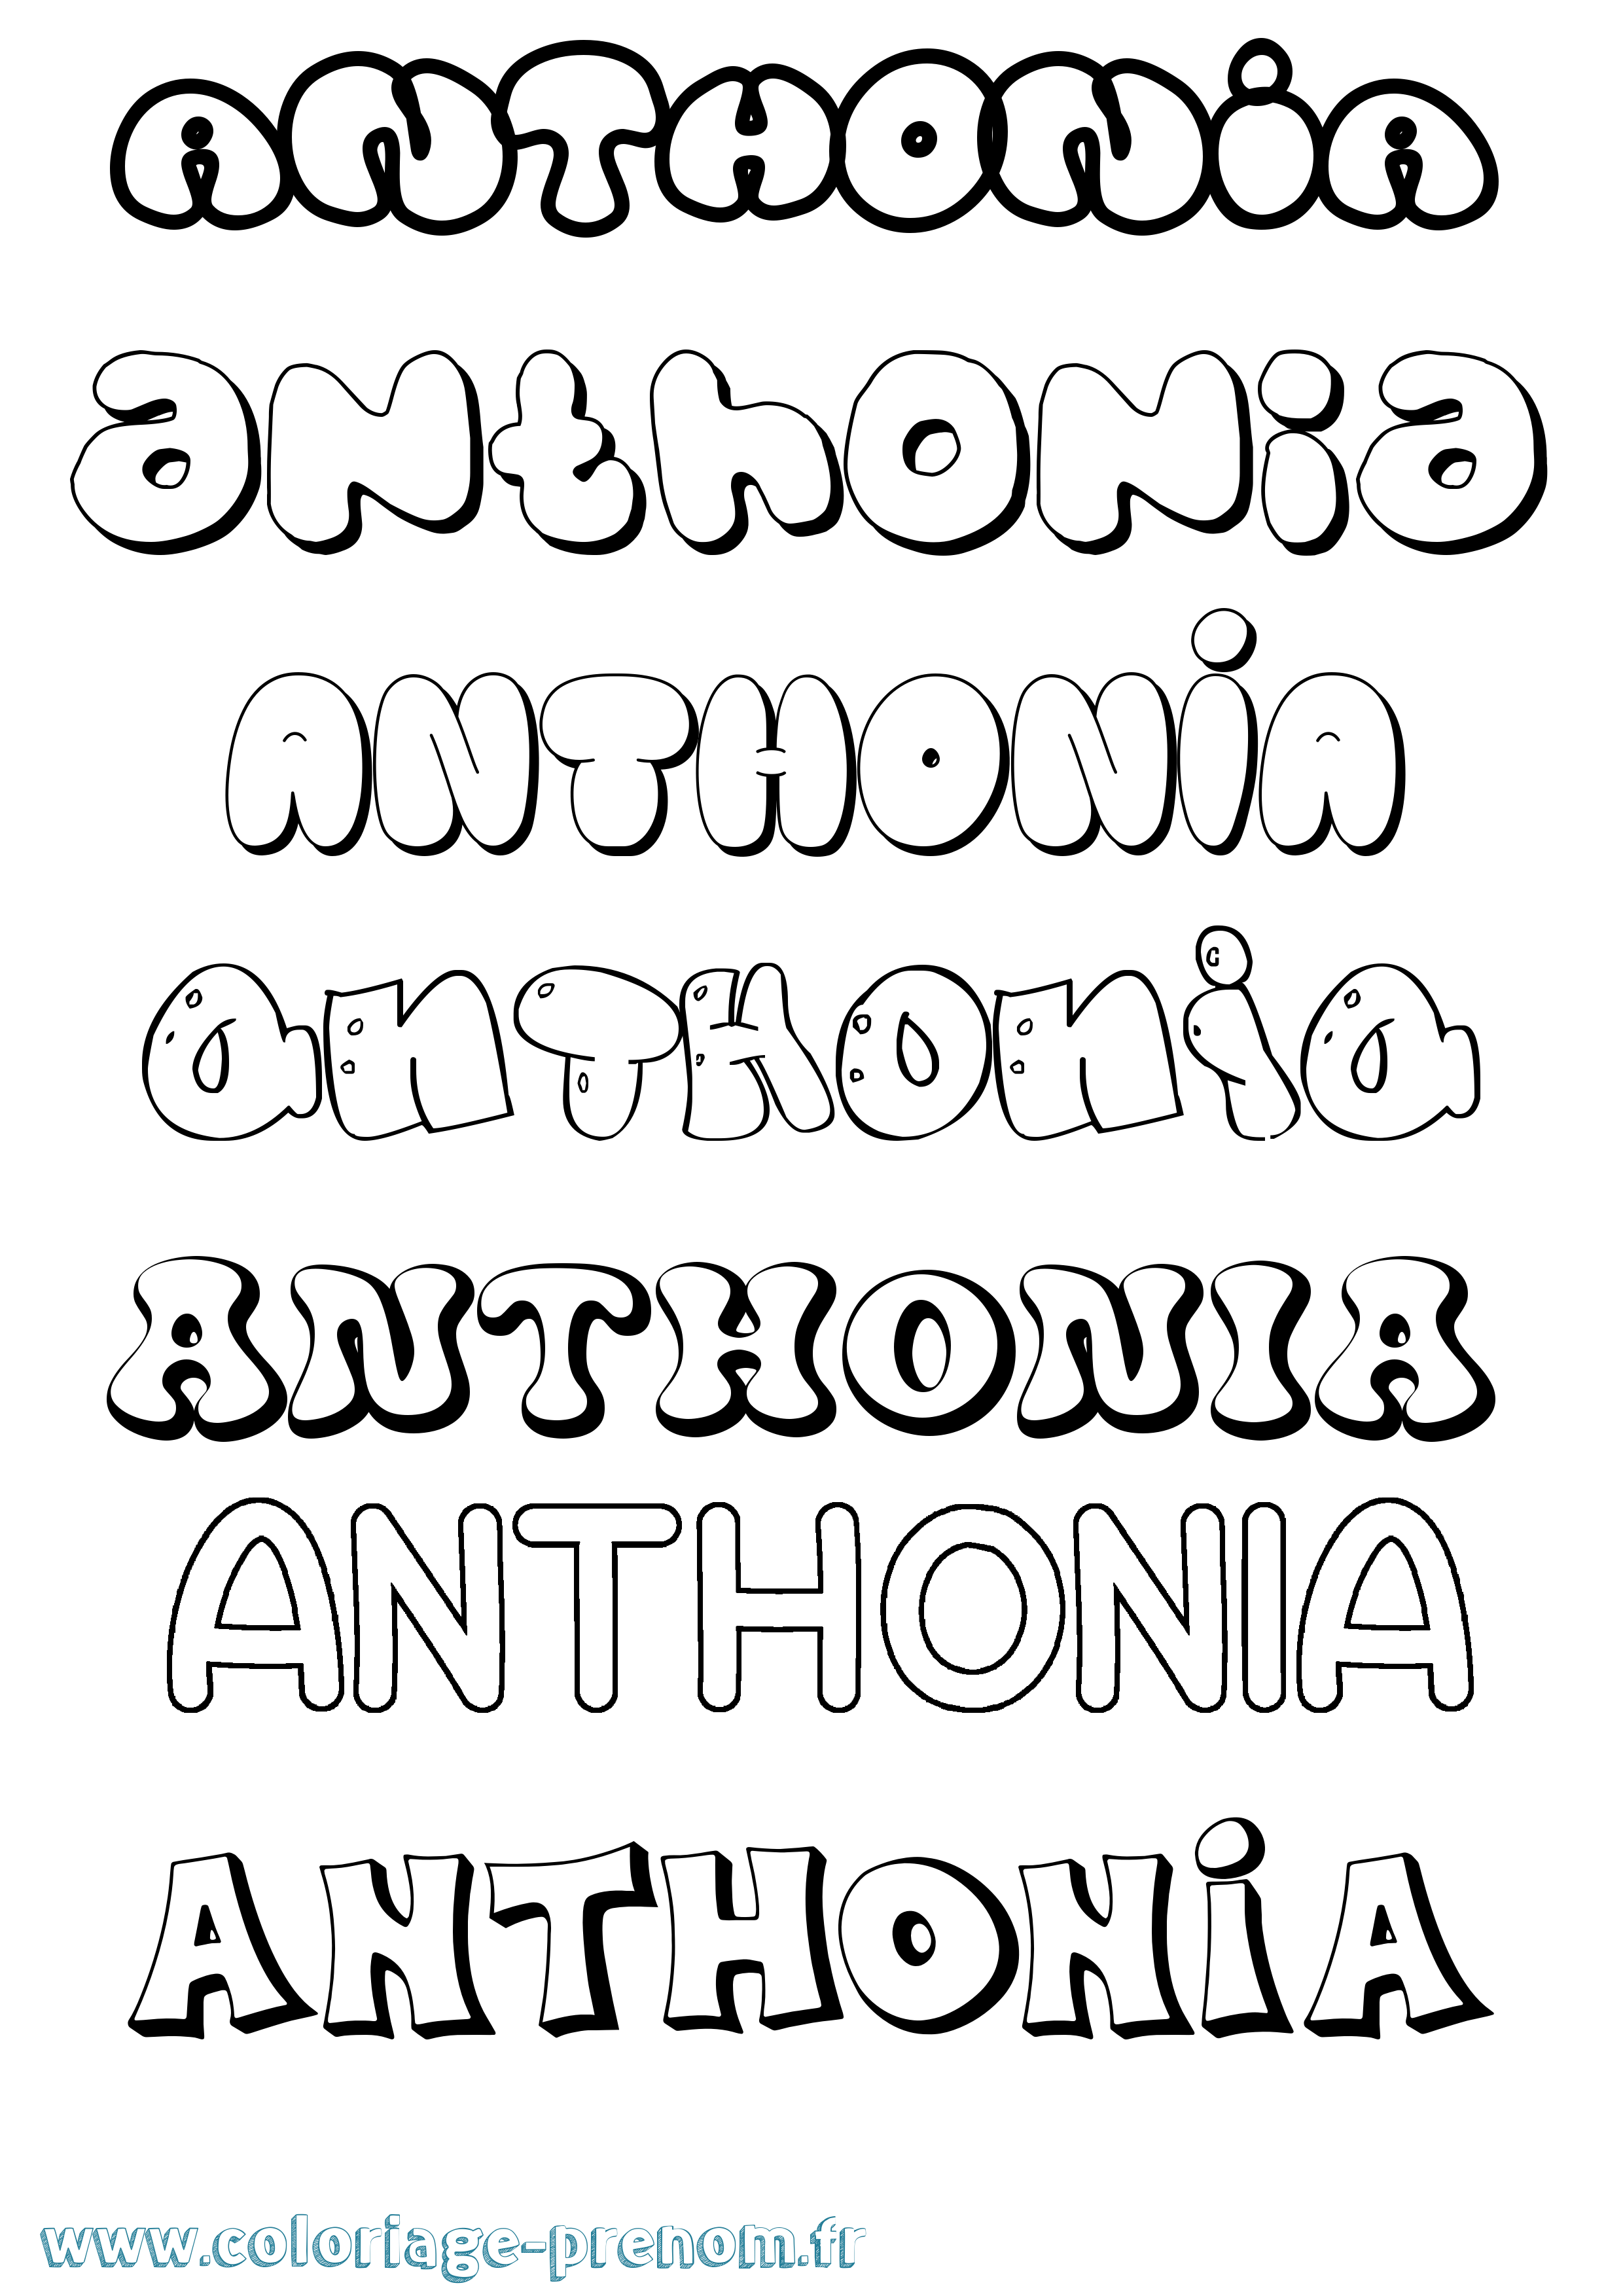 Coloriage prénom Anthonia Bubble